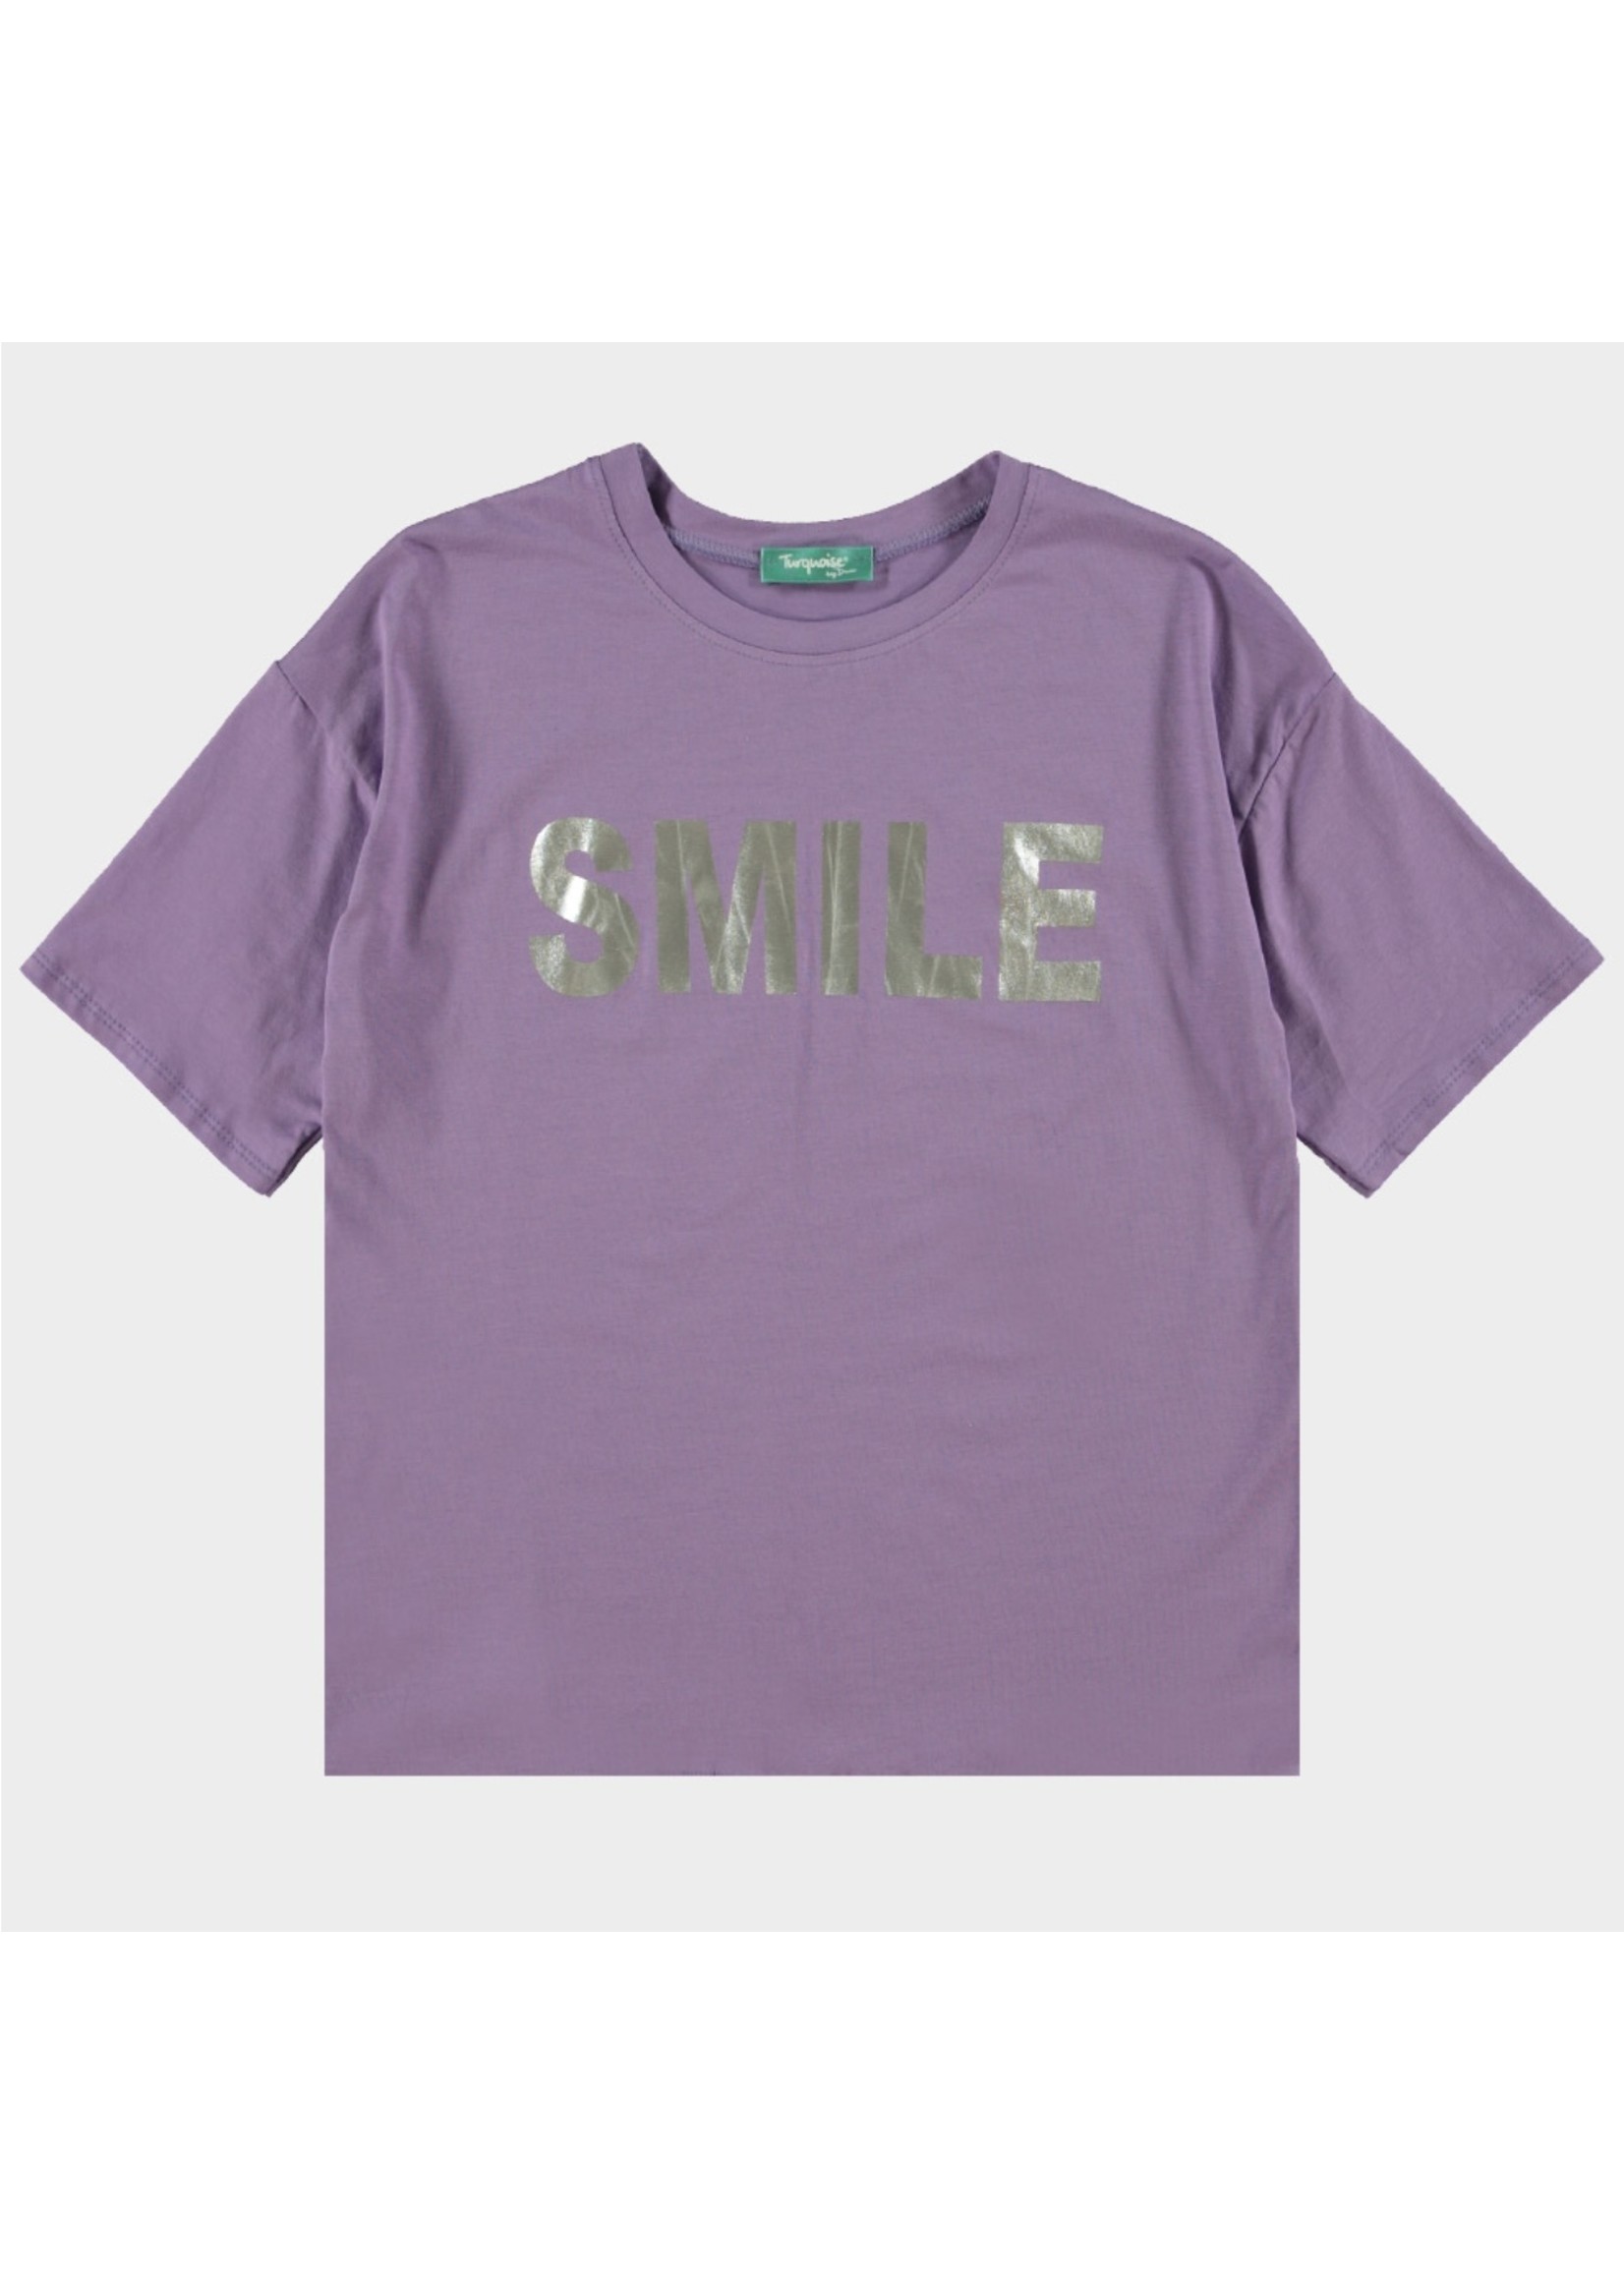 B-stylicious Smile - T-shirt - Mint, Lila